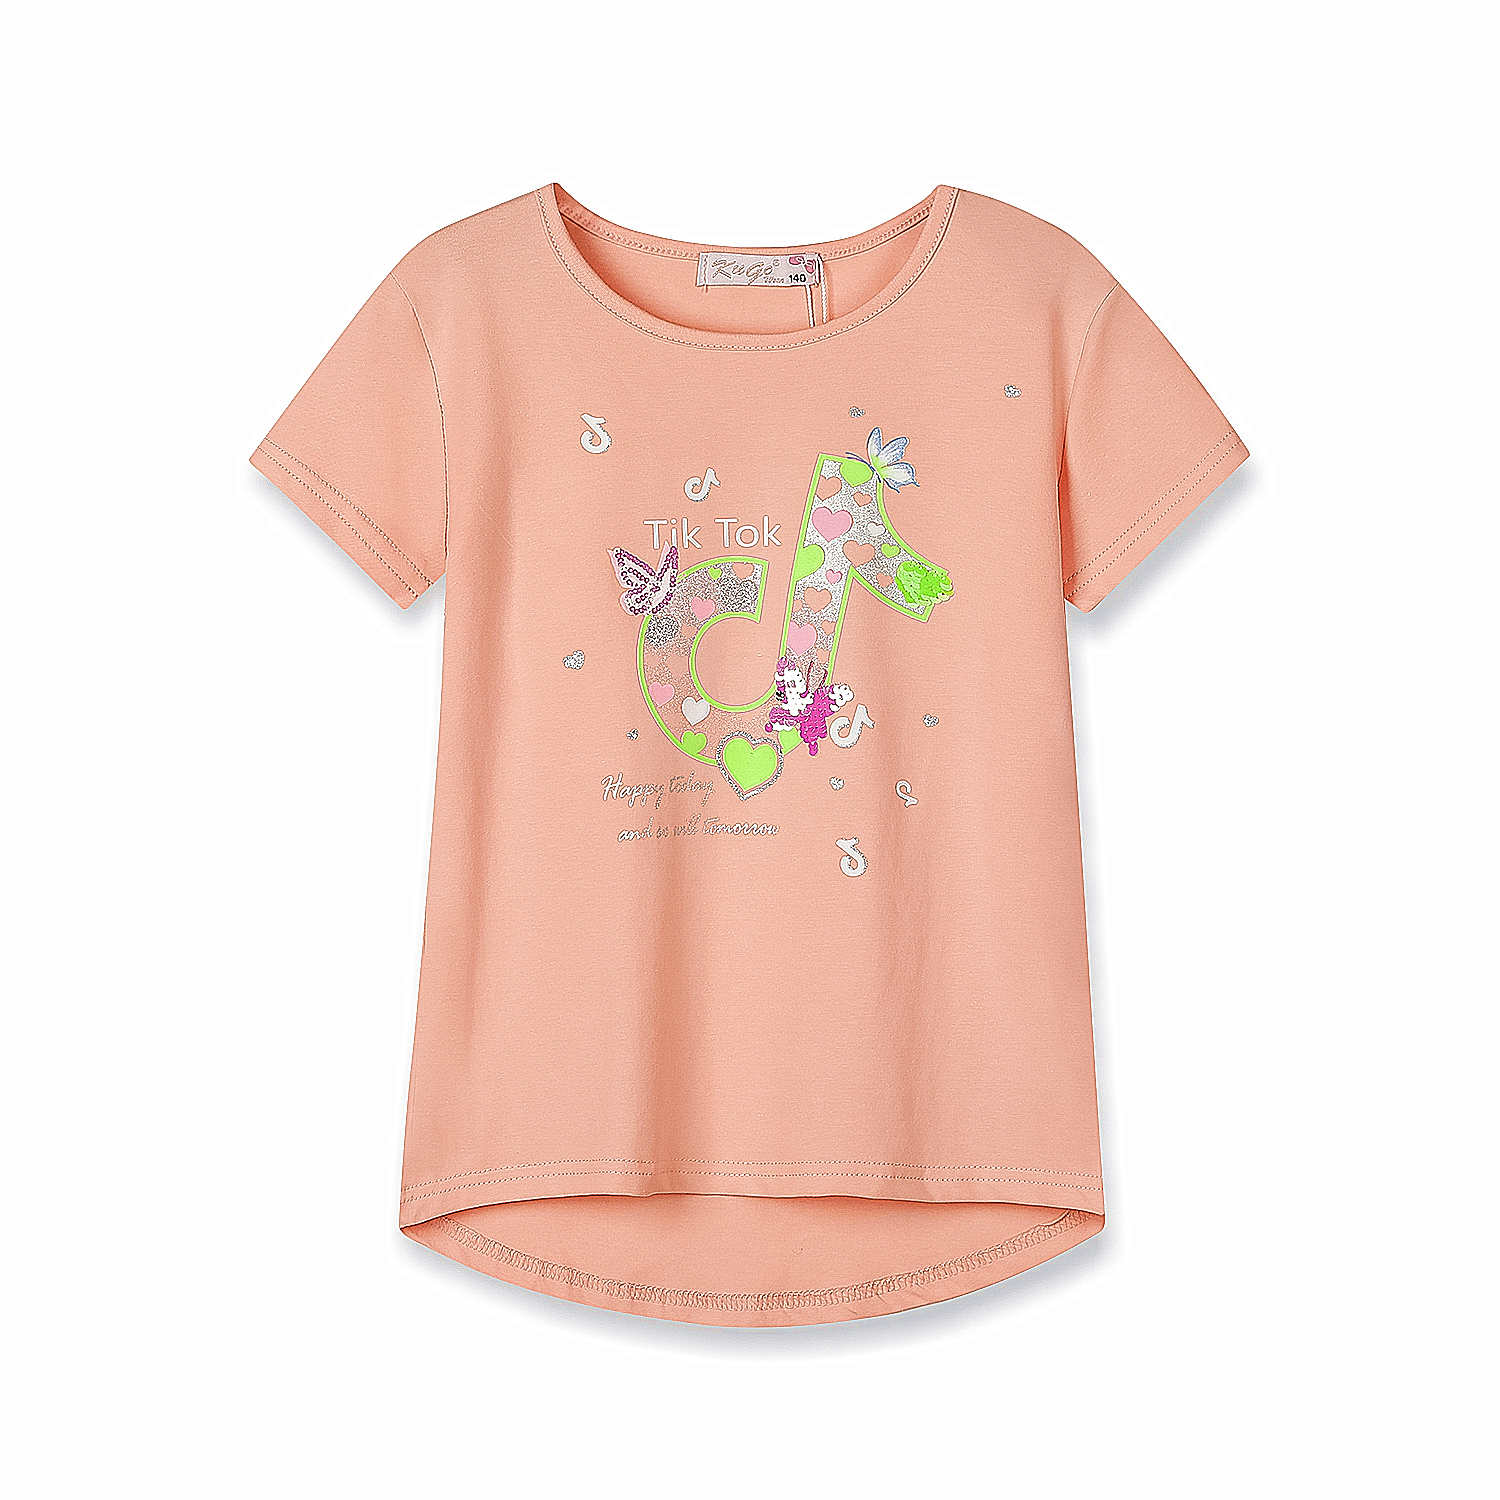 Dívčí triko s flitry - KUGO WK0808, lososová Barva: Lososová, Velikost: 146